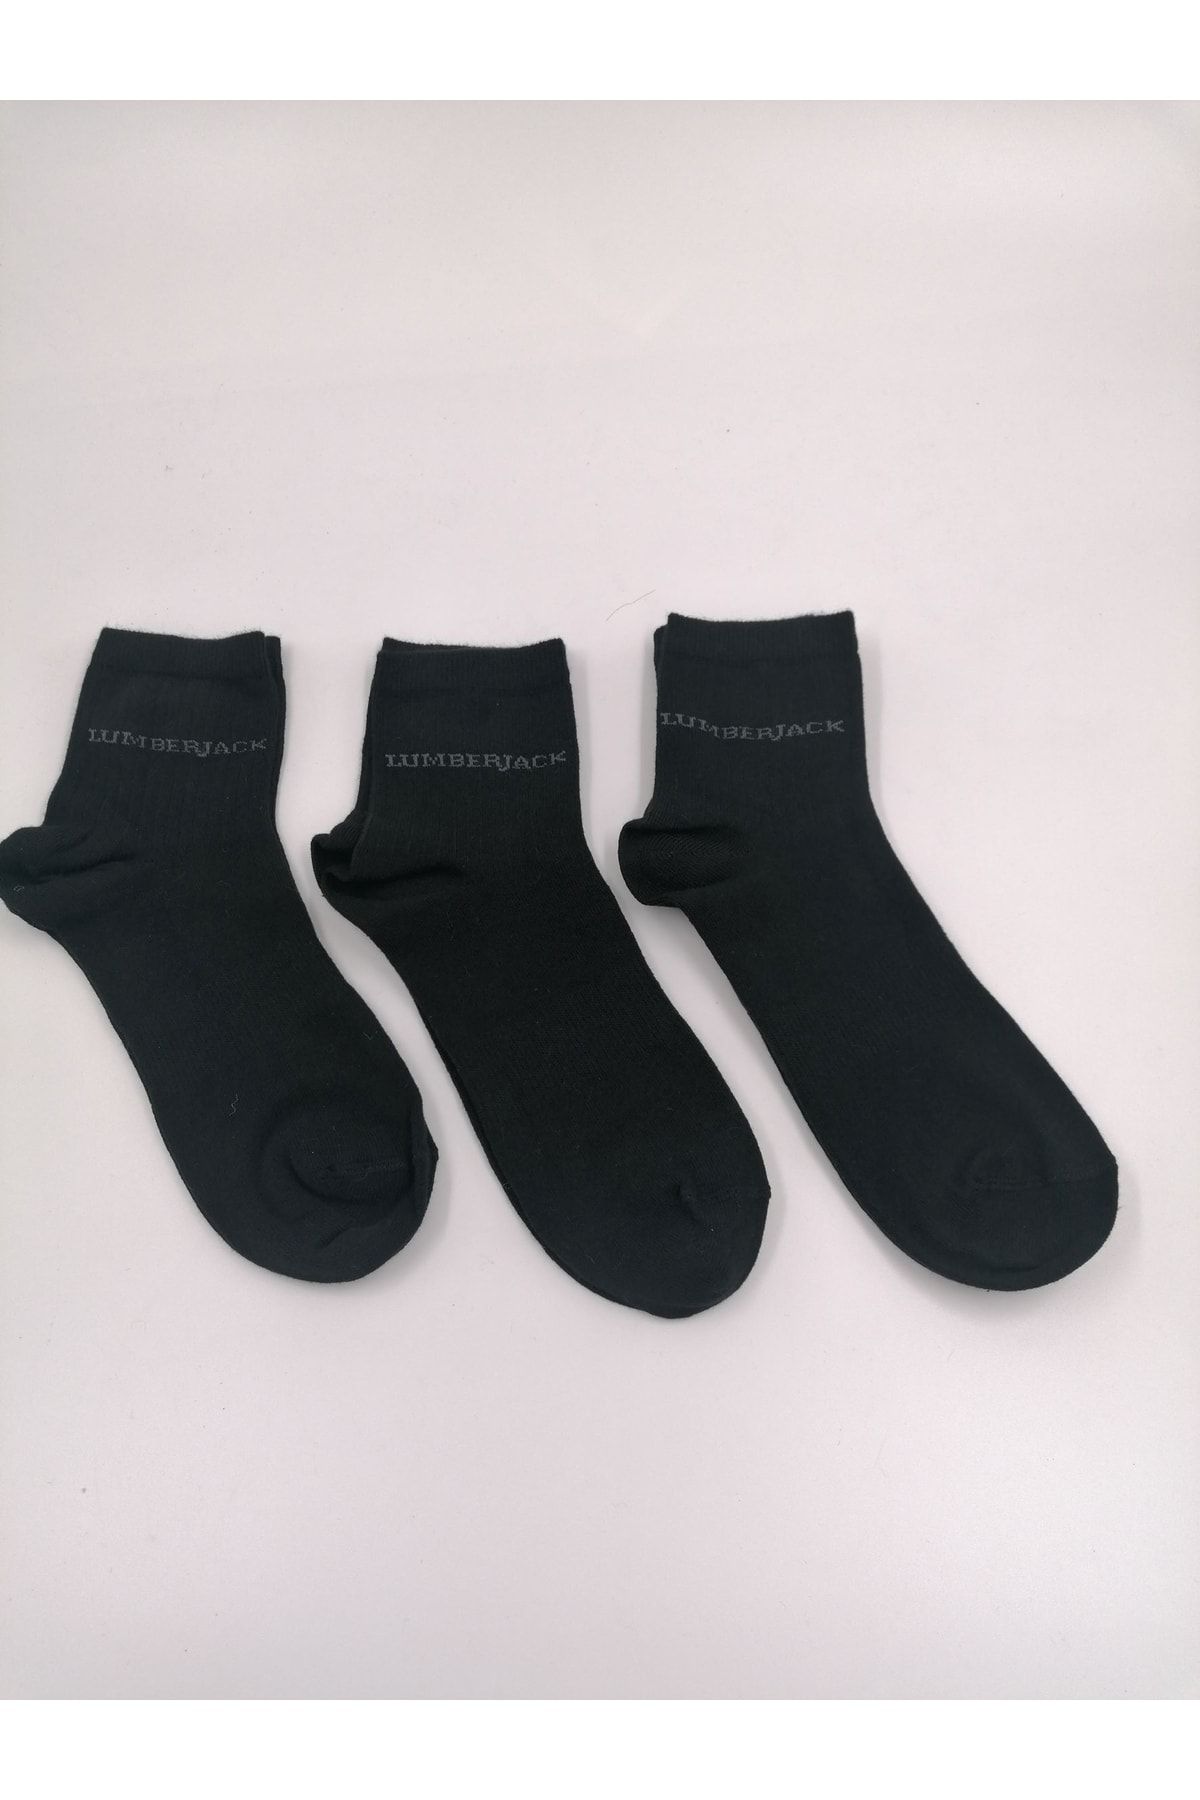 Lumberjack Danny Siyah Renk 3lü Soket Çorap 40-44